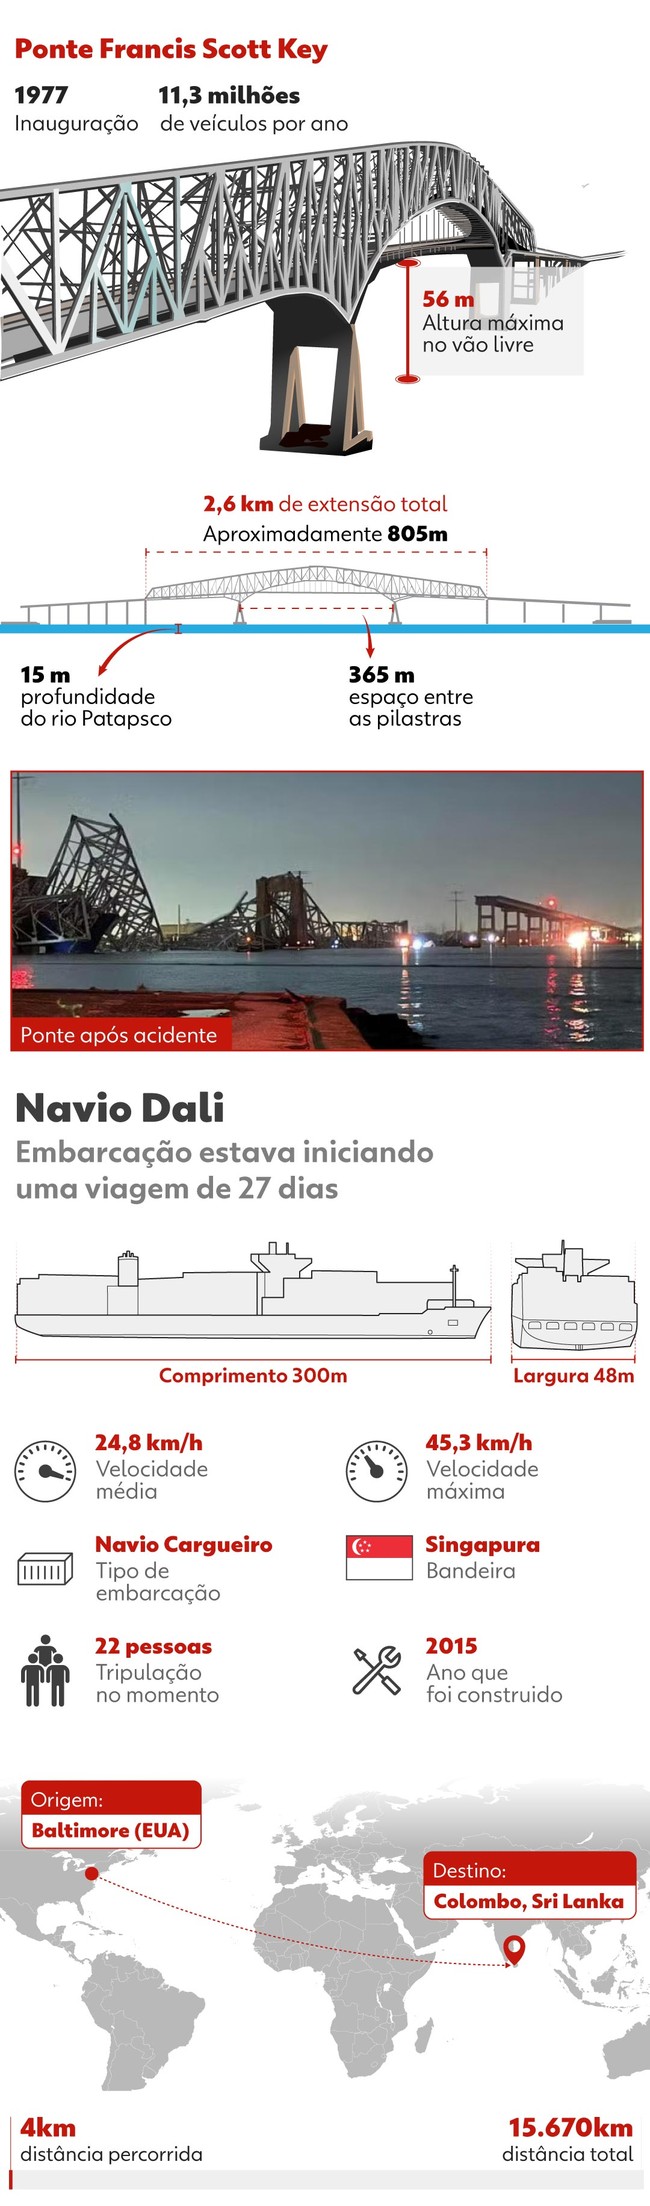 Infográfico apresenta mais detalhes sobre a ponte que desmoronou nos EUA em Baltimore e sobre o navio Dali.